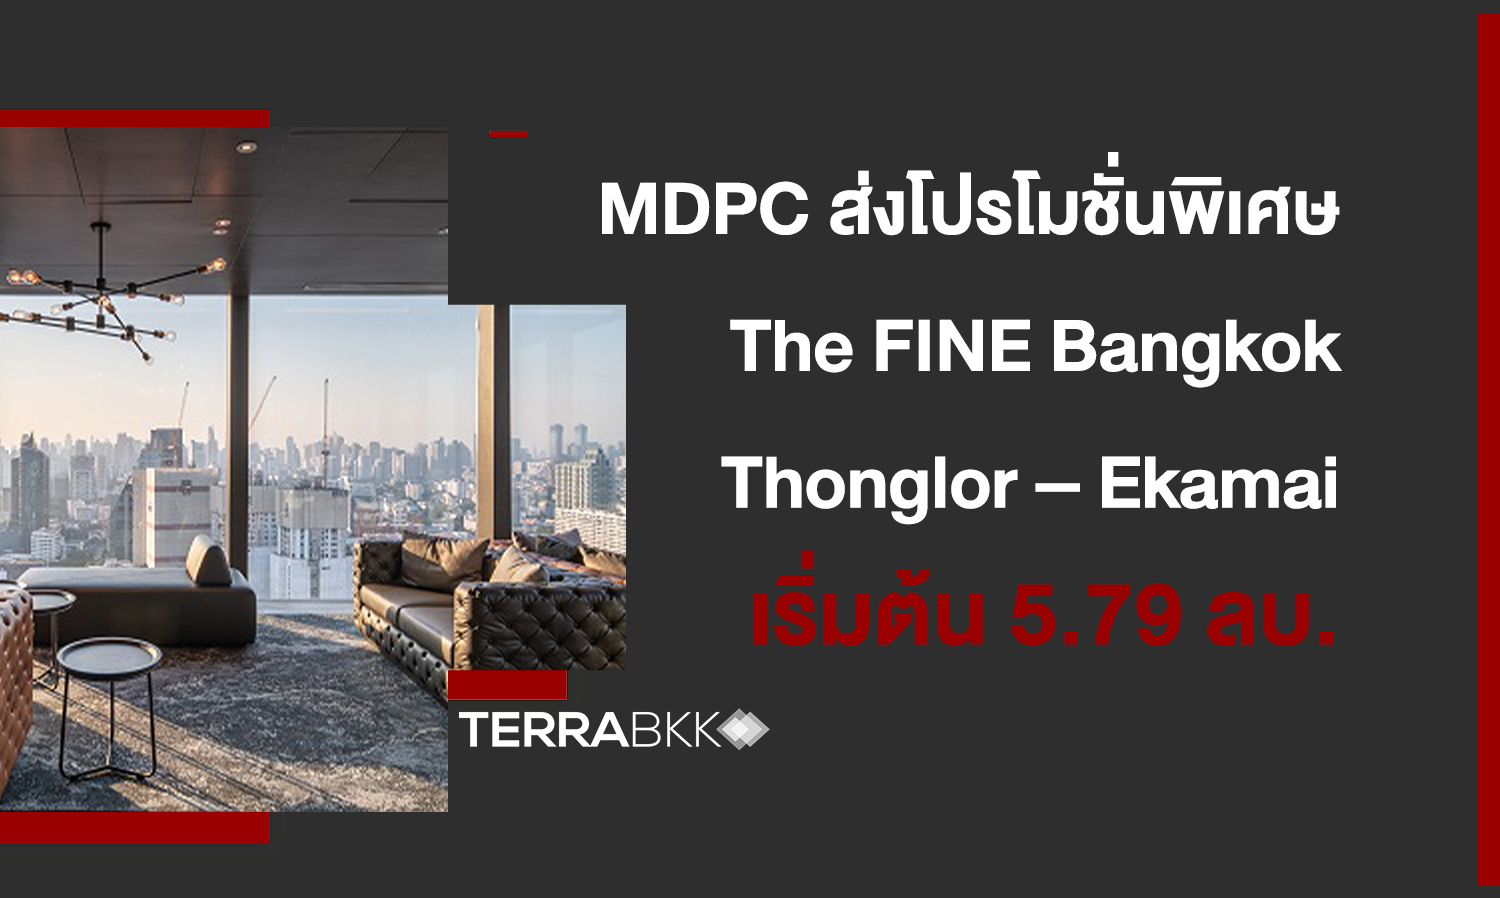 MDPC ส่งโปรโมชั่นพิเศษ The FINE Bangkok Thonglor – Ekamai จัดเต็มเฟอร์นิเจอร์แต่งครบพร้อมอยู่ ราคาเริ่มต้น 5.79 ล้านบาท